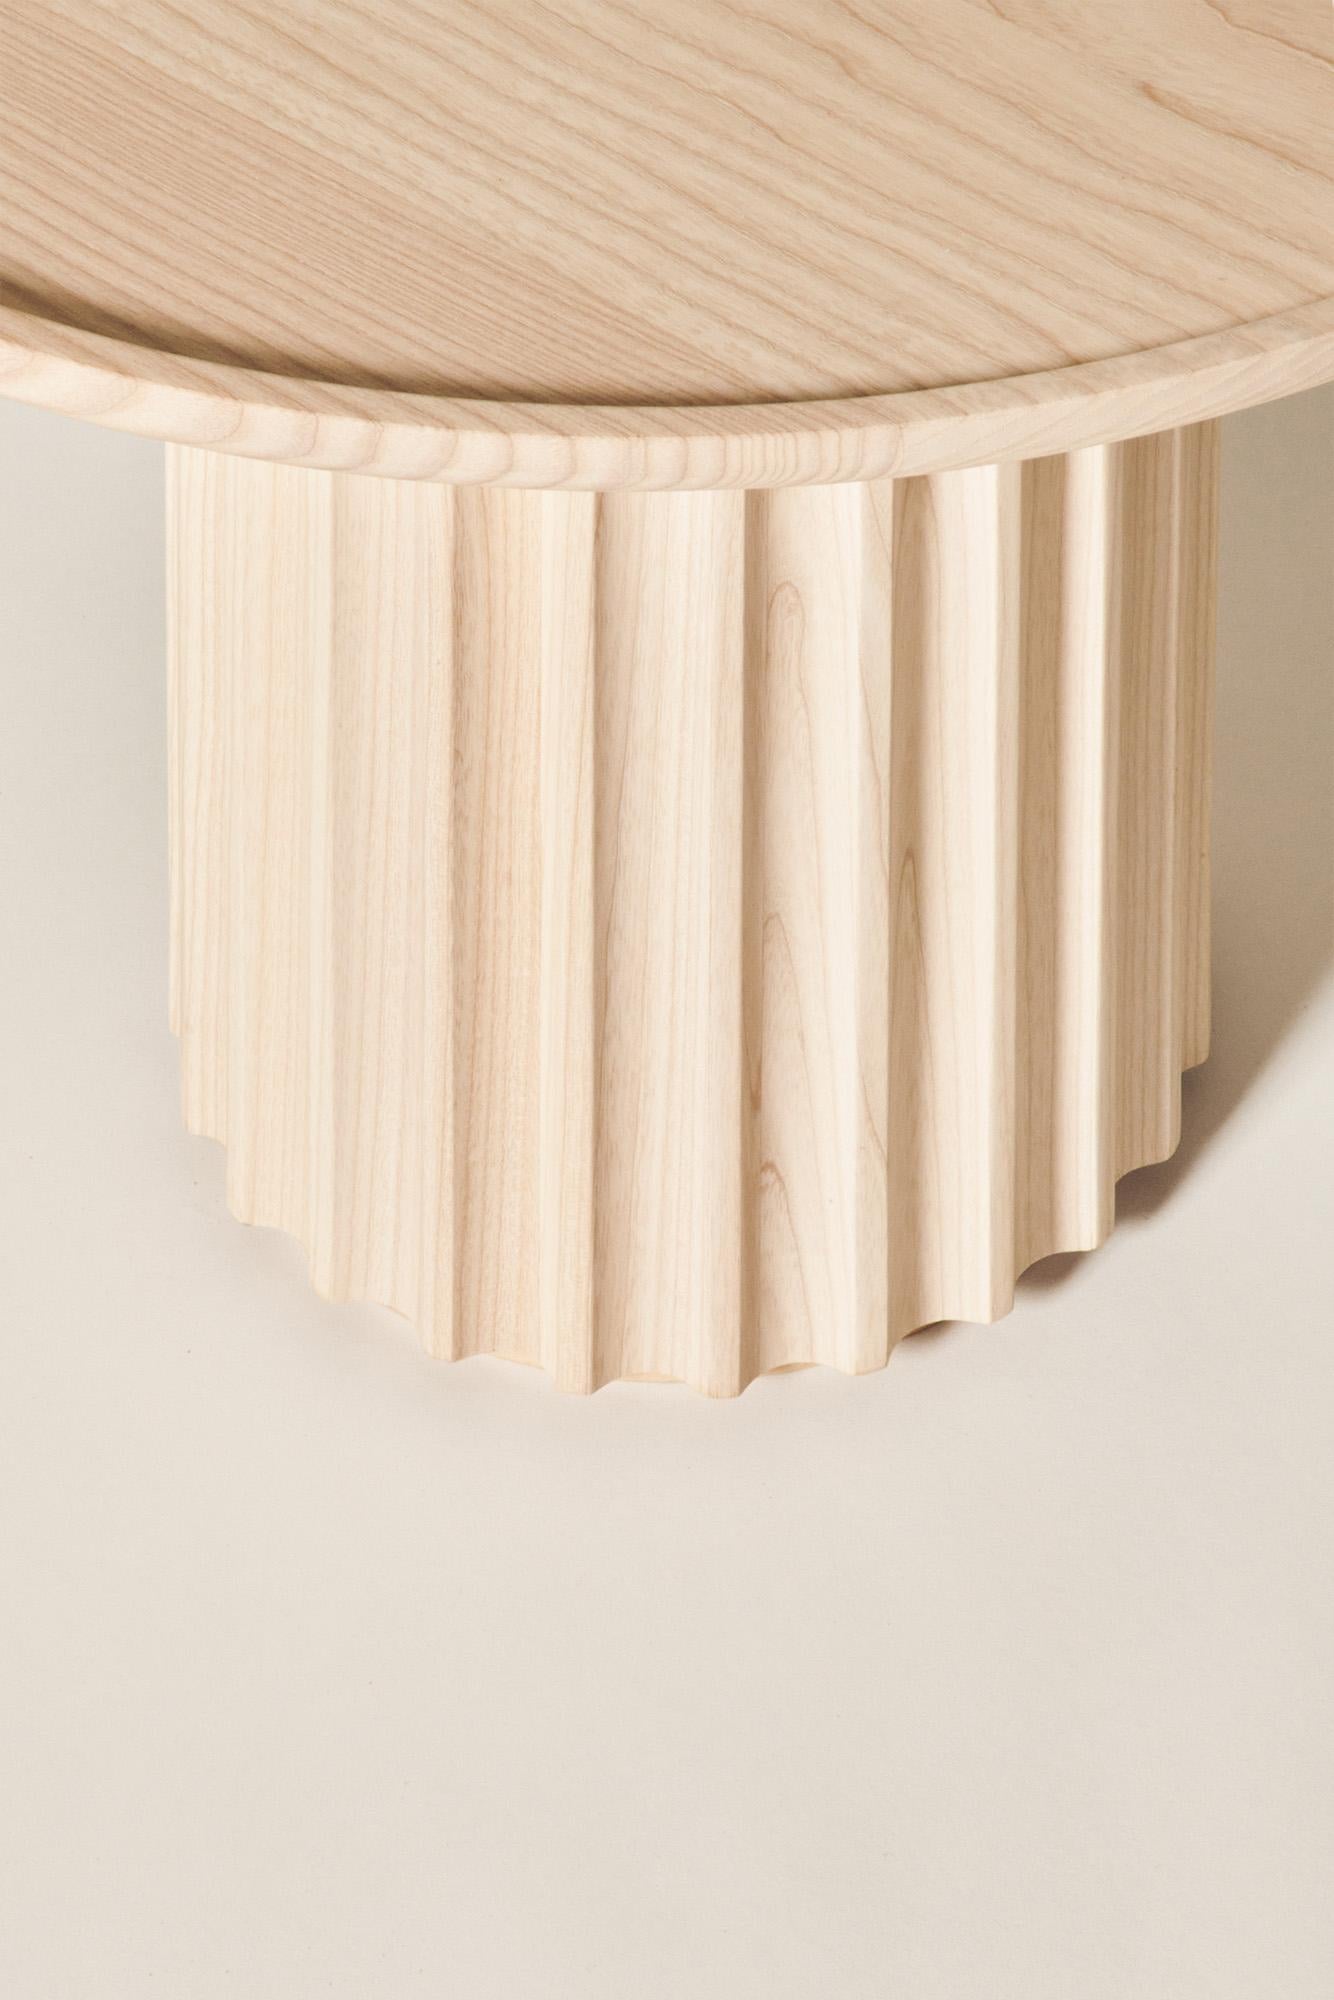 Table basse Capitello en bois massif, finition naturelle, contemporaine en vente 3